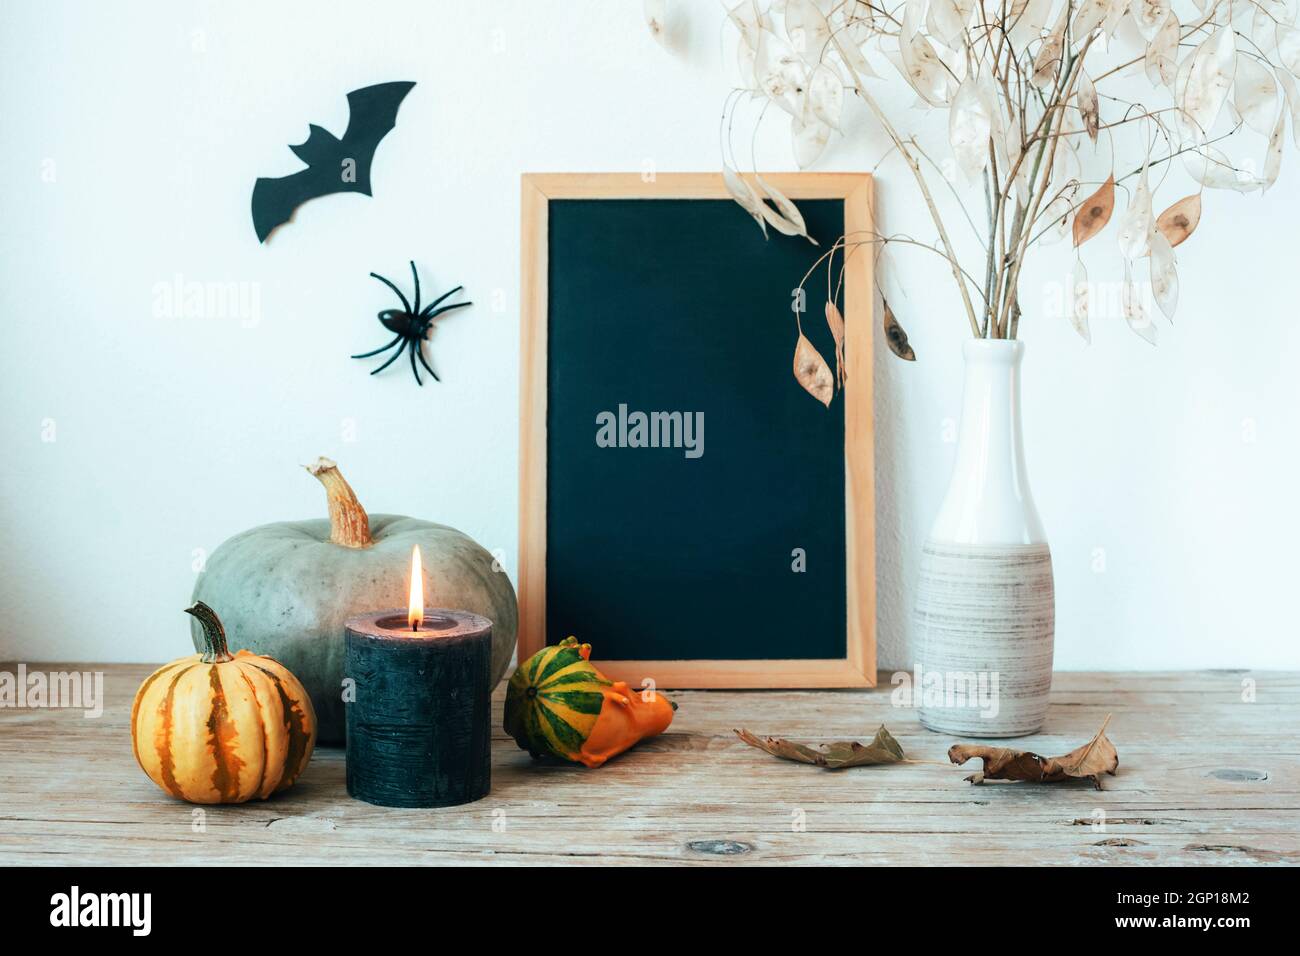 Composición de Halloween con pizarrón, calabazas, velas y flores secas en jarrón, murciélago y araña. Fondo festivo, primeros planos. Espacio de copia. Foto de stock